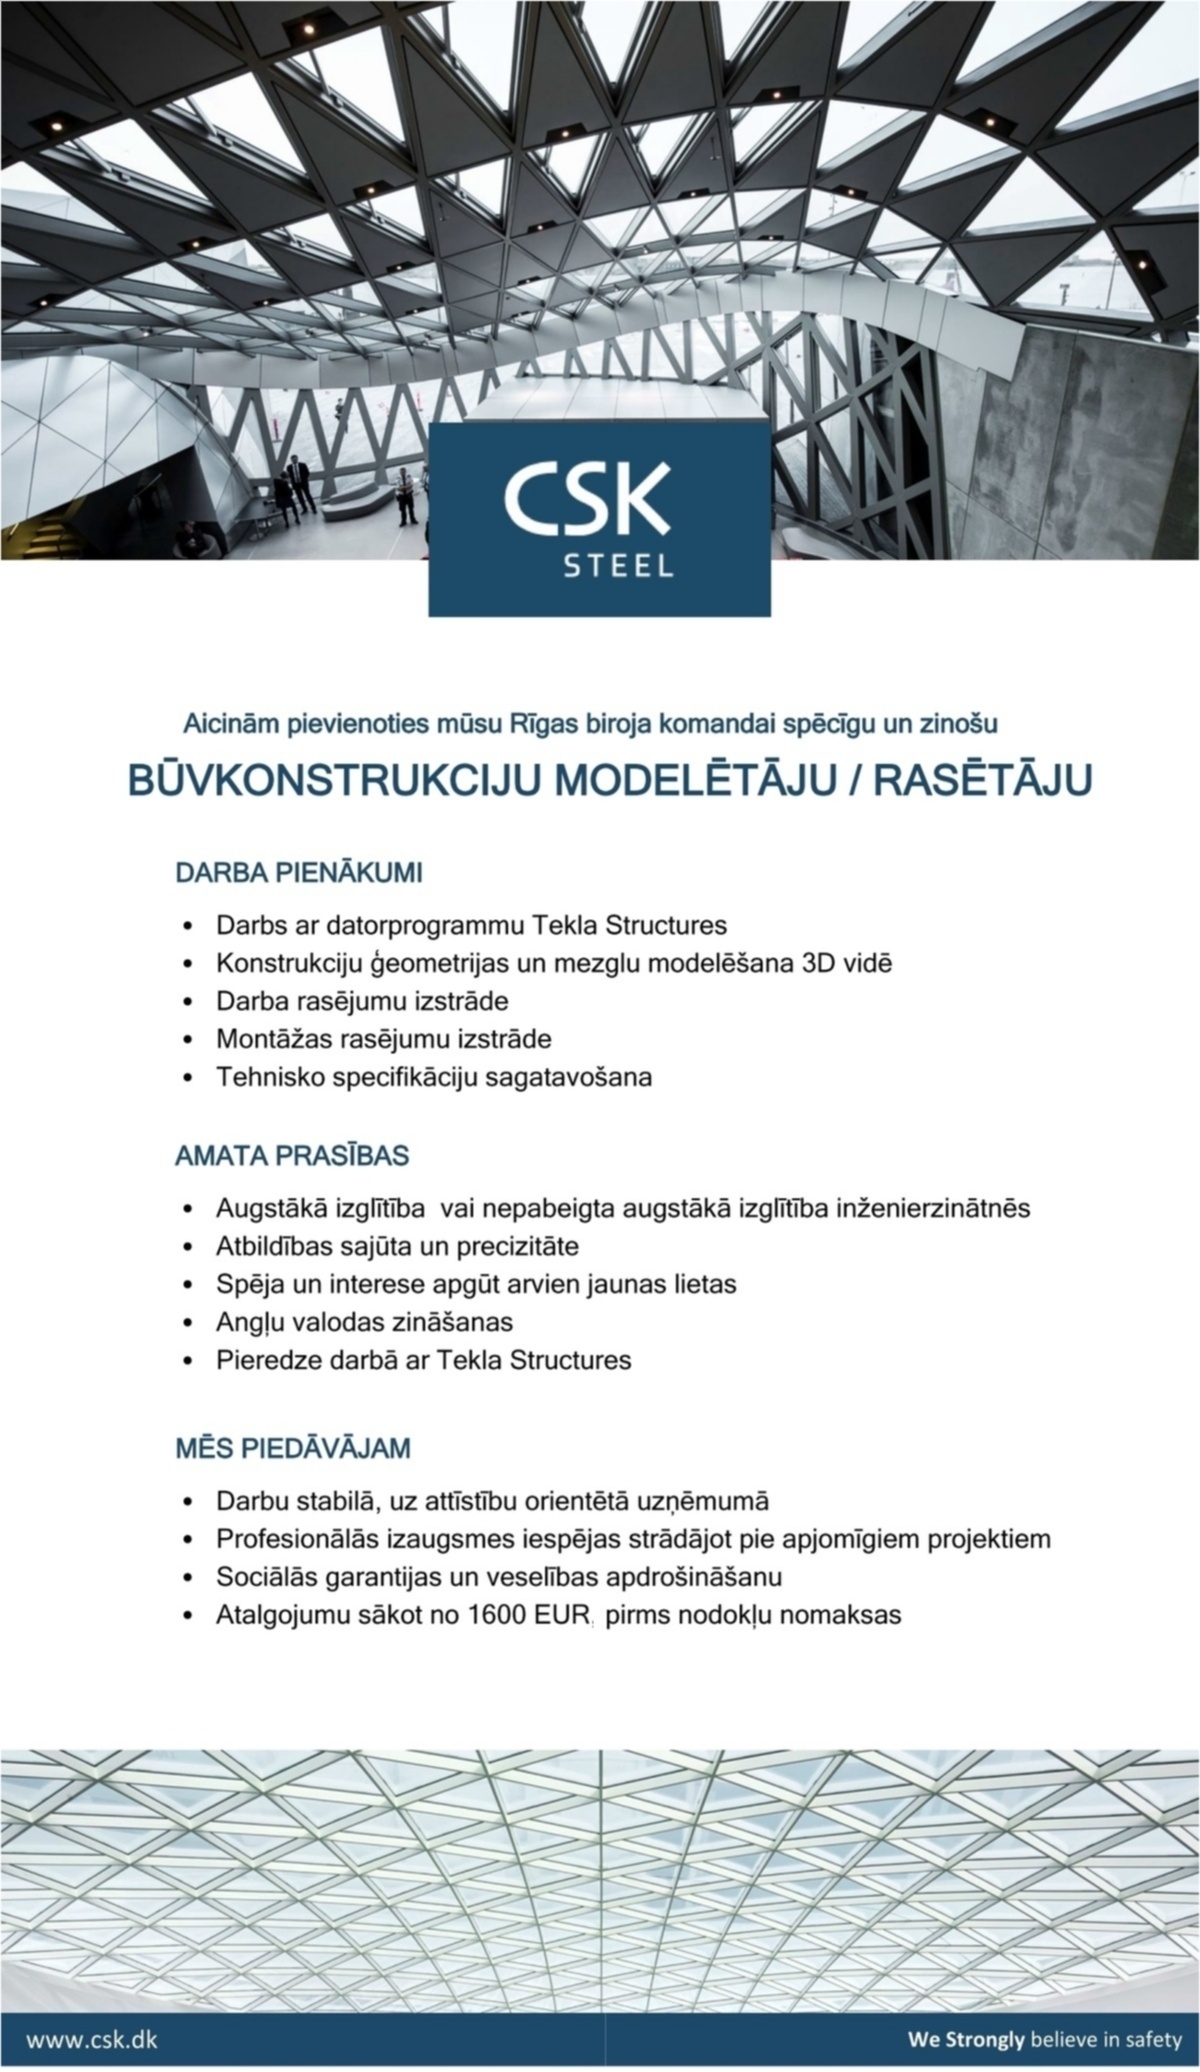 CSK STEEL, SIA Būvkonstrukciju modelētājs/-a, rasētājs/-a